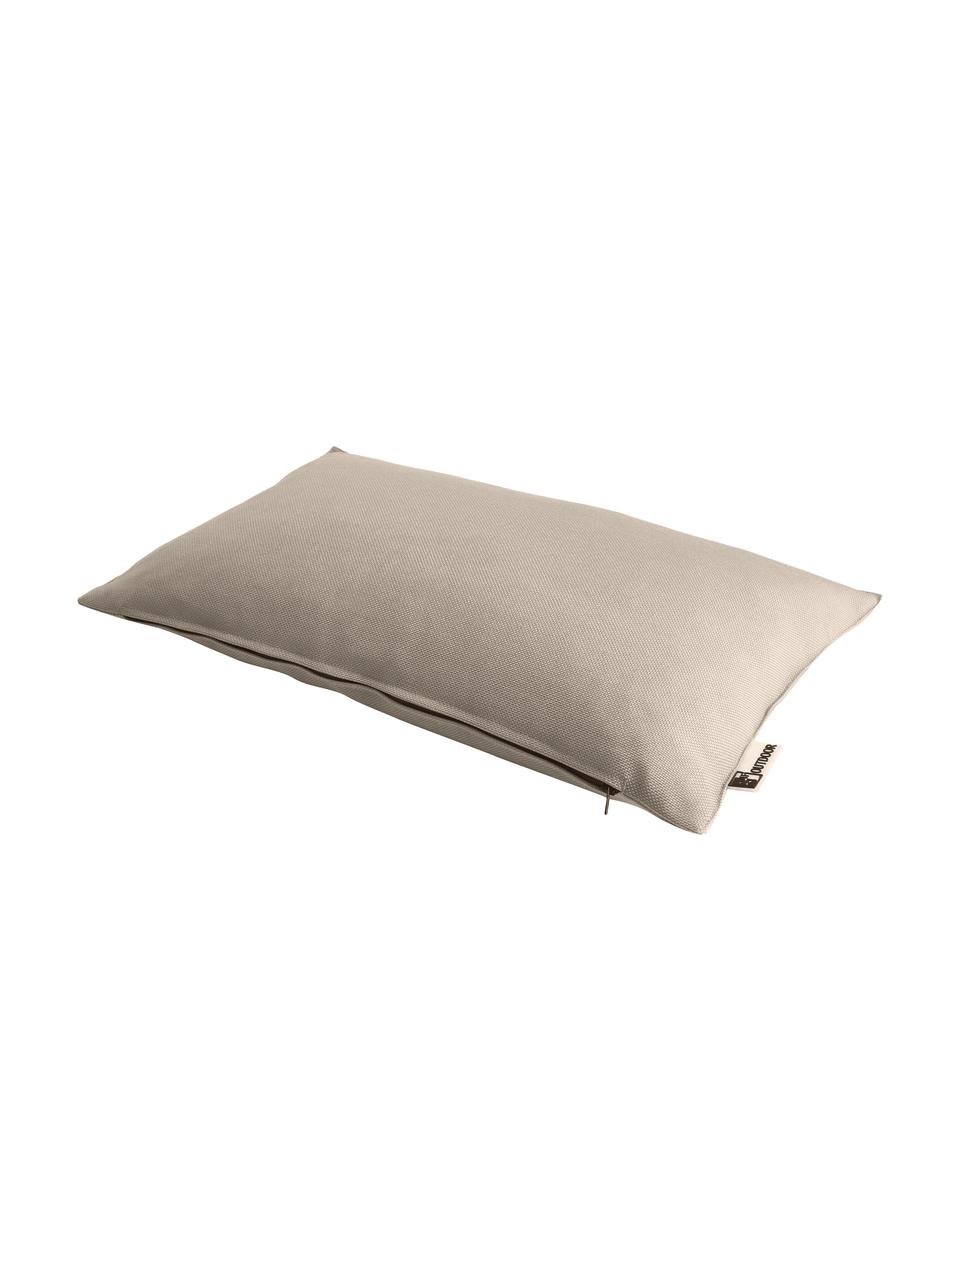 Zewnętrzna poduszka Olef, 100% bawełna, Beżowy, S 30 x D 50 cm